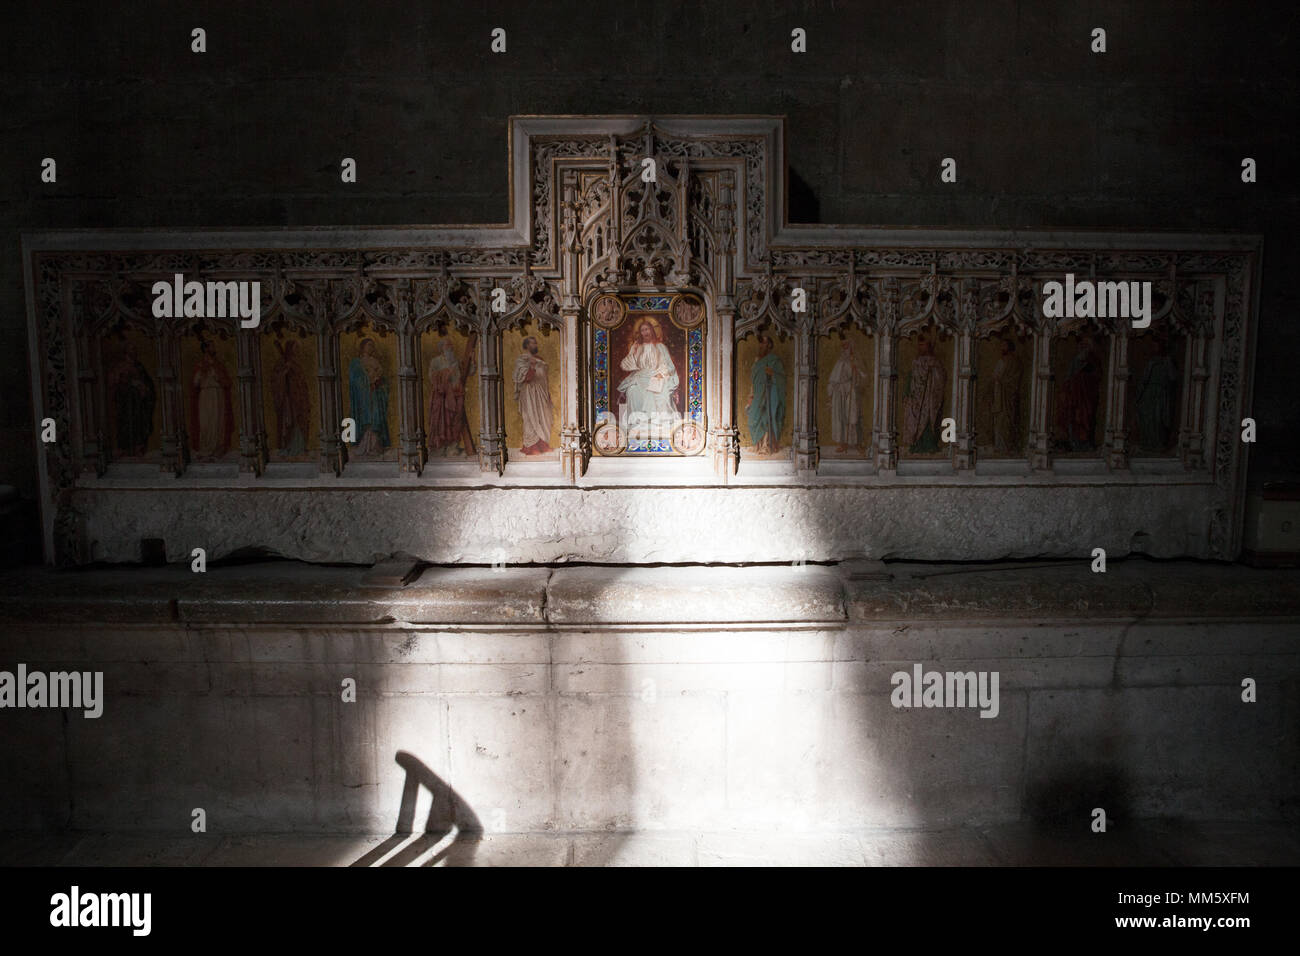 Vue intérieure de l'archidiocèse d'Auch, Gers, France. Également nommée Cathédrale de Sainte-Marie. De style gothique. Banque D'Images